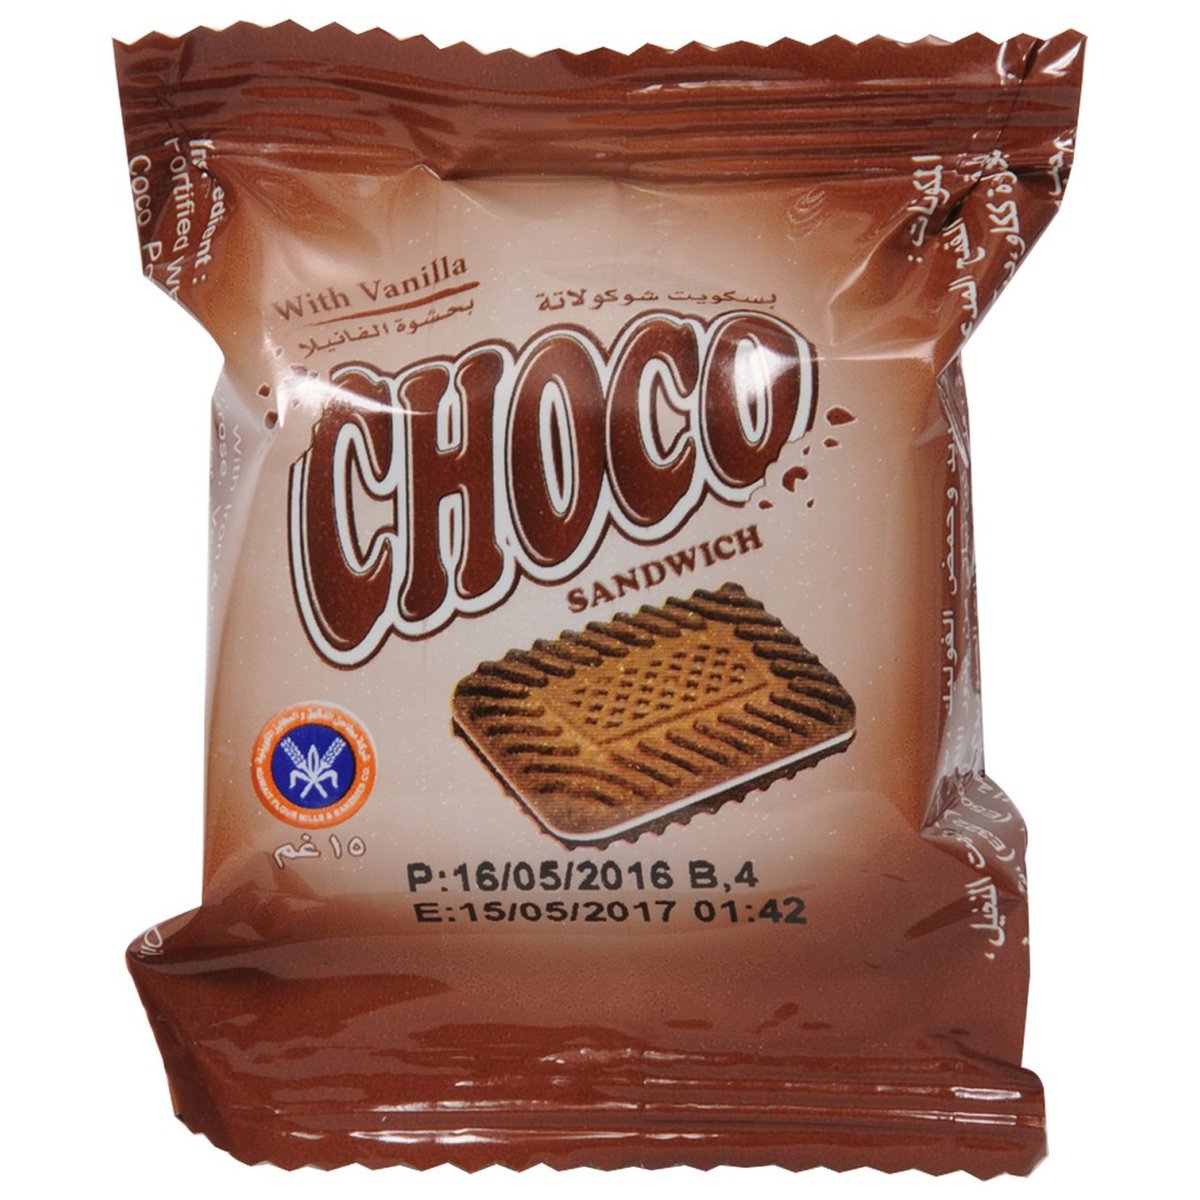 KFMBC Choco Biscuits With Vanilla 270 g